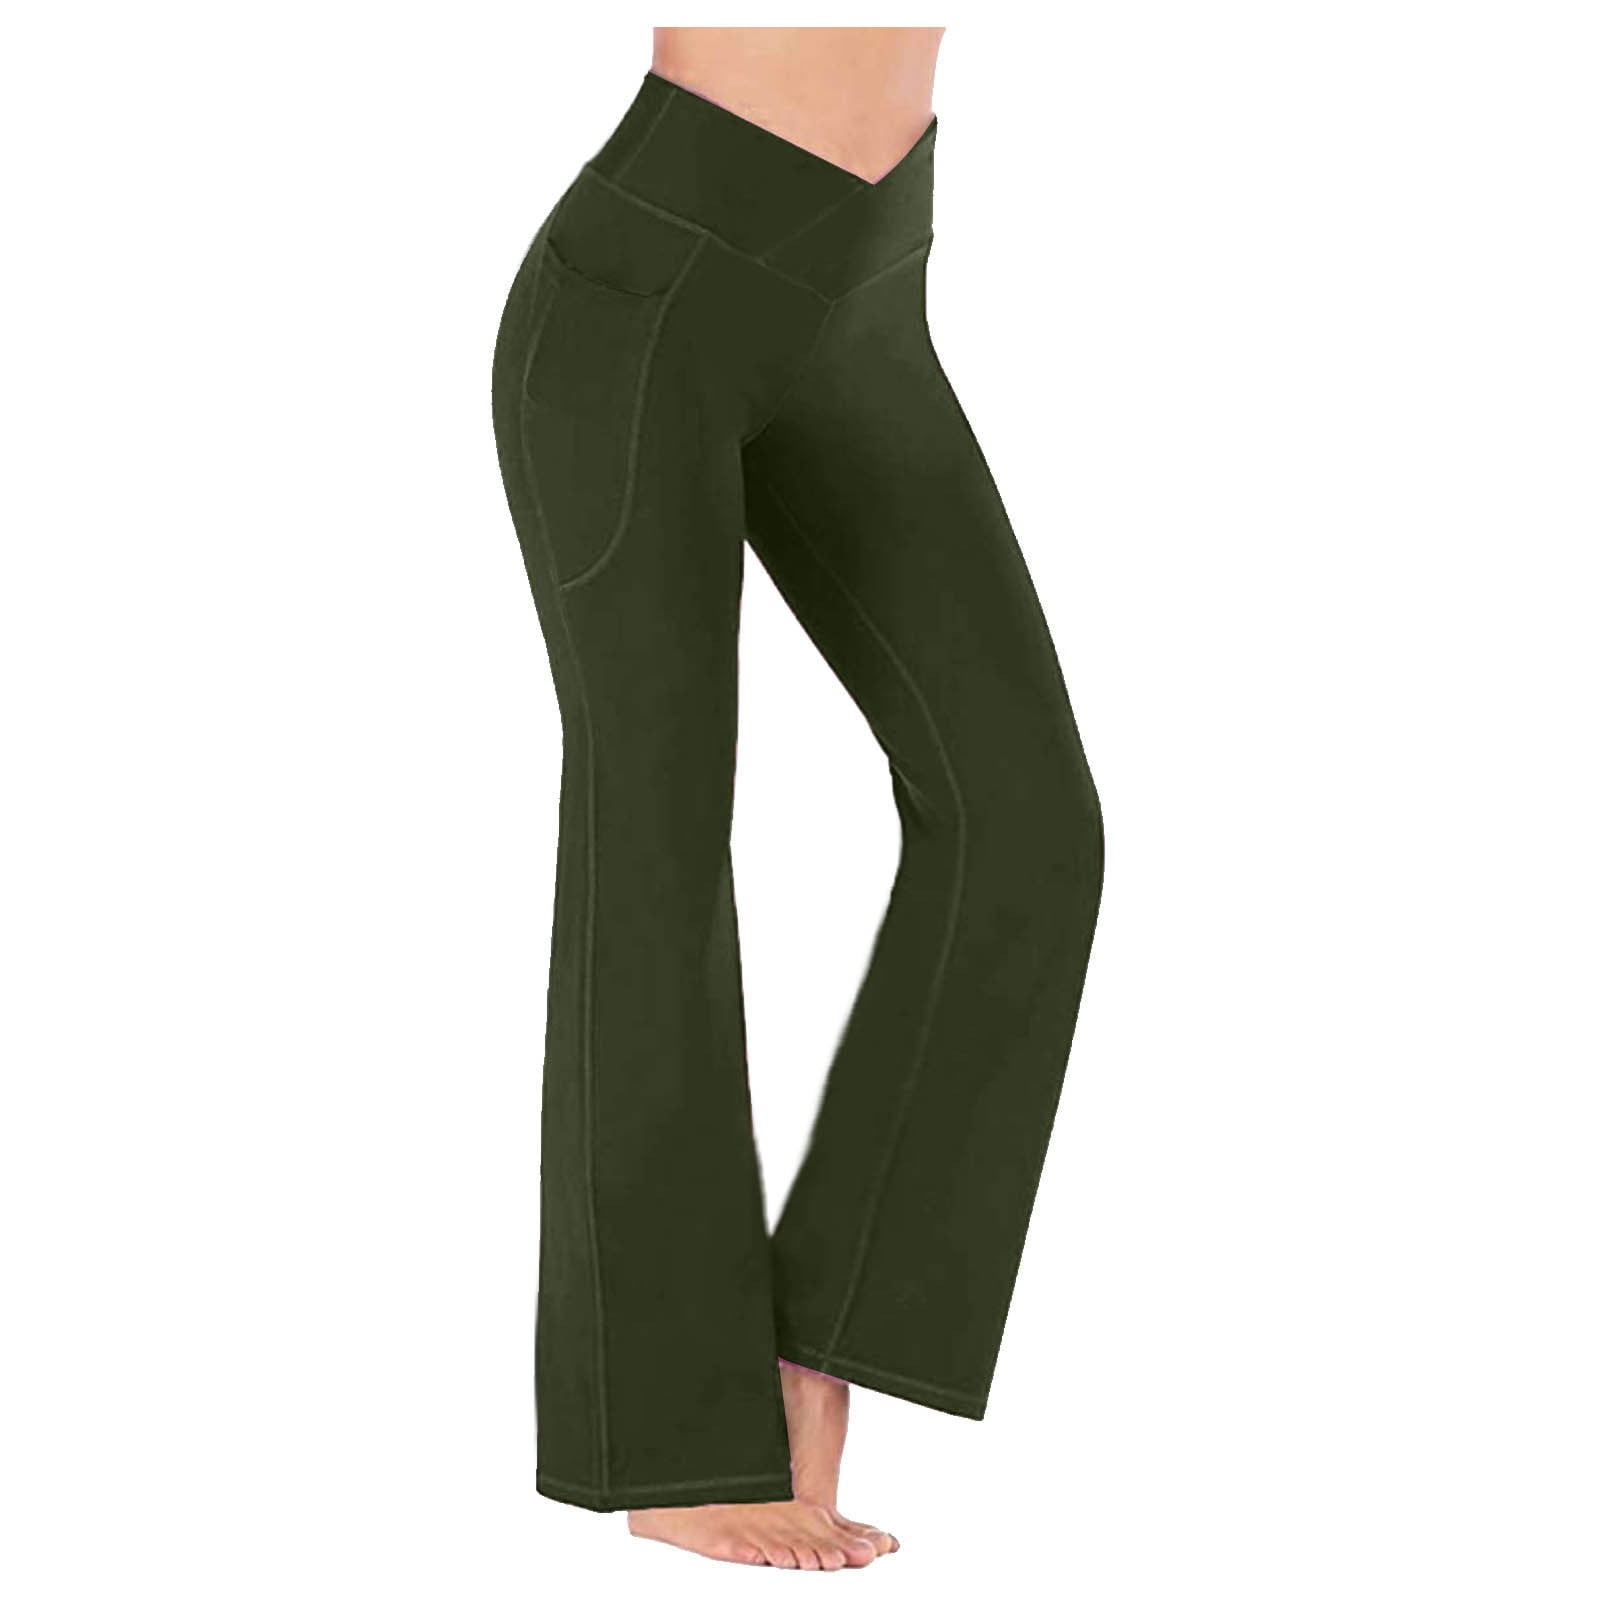 NWOT Zella Barely Flare Yoga Pants 10